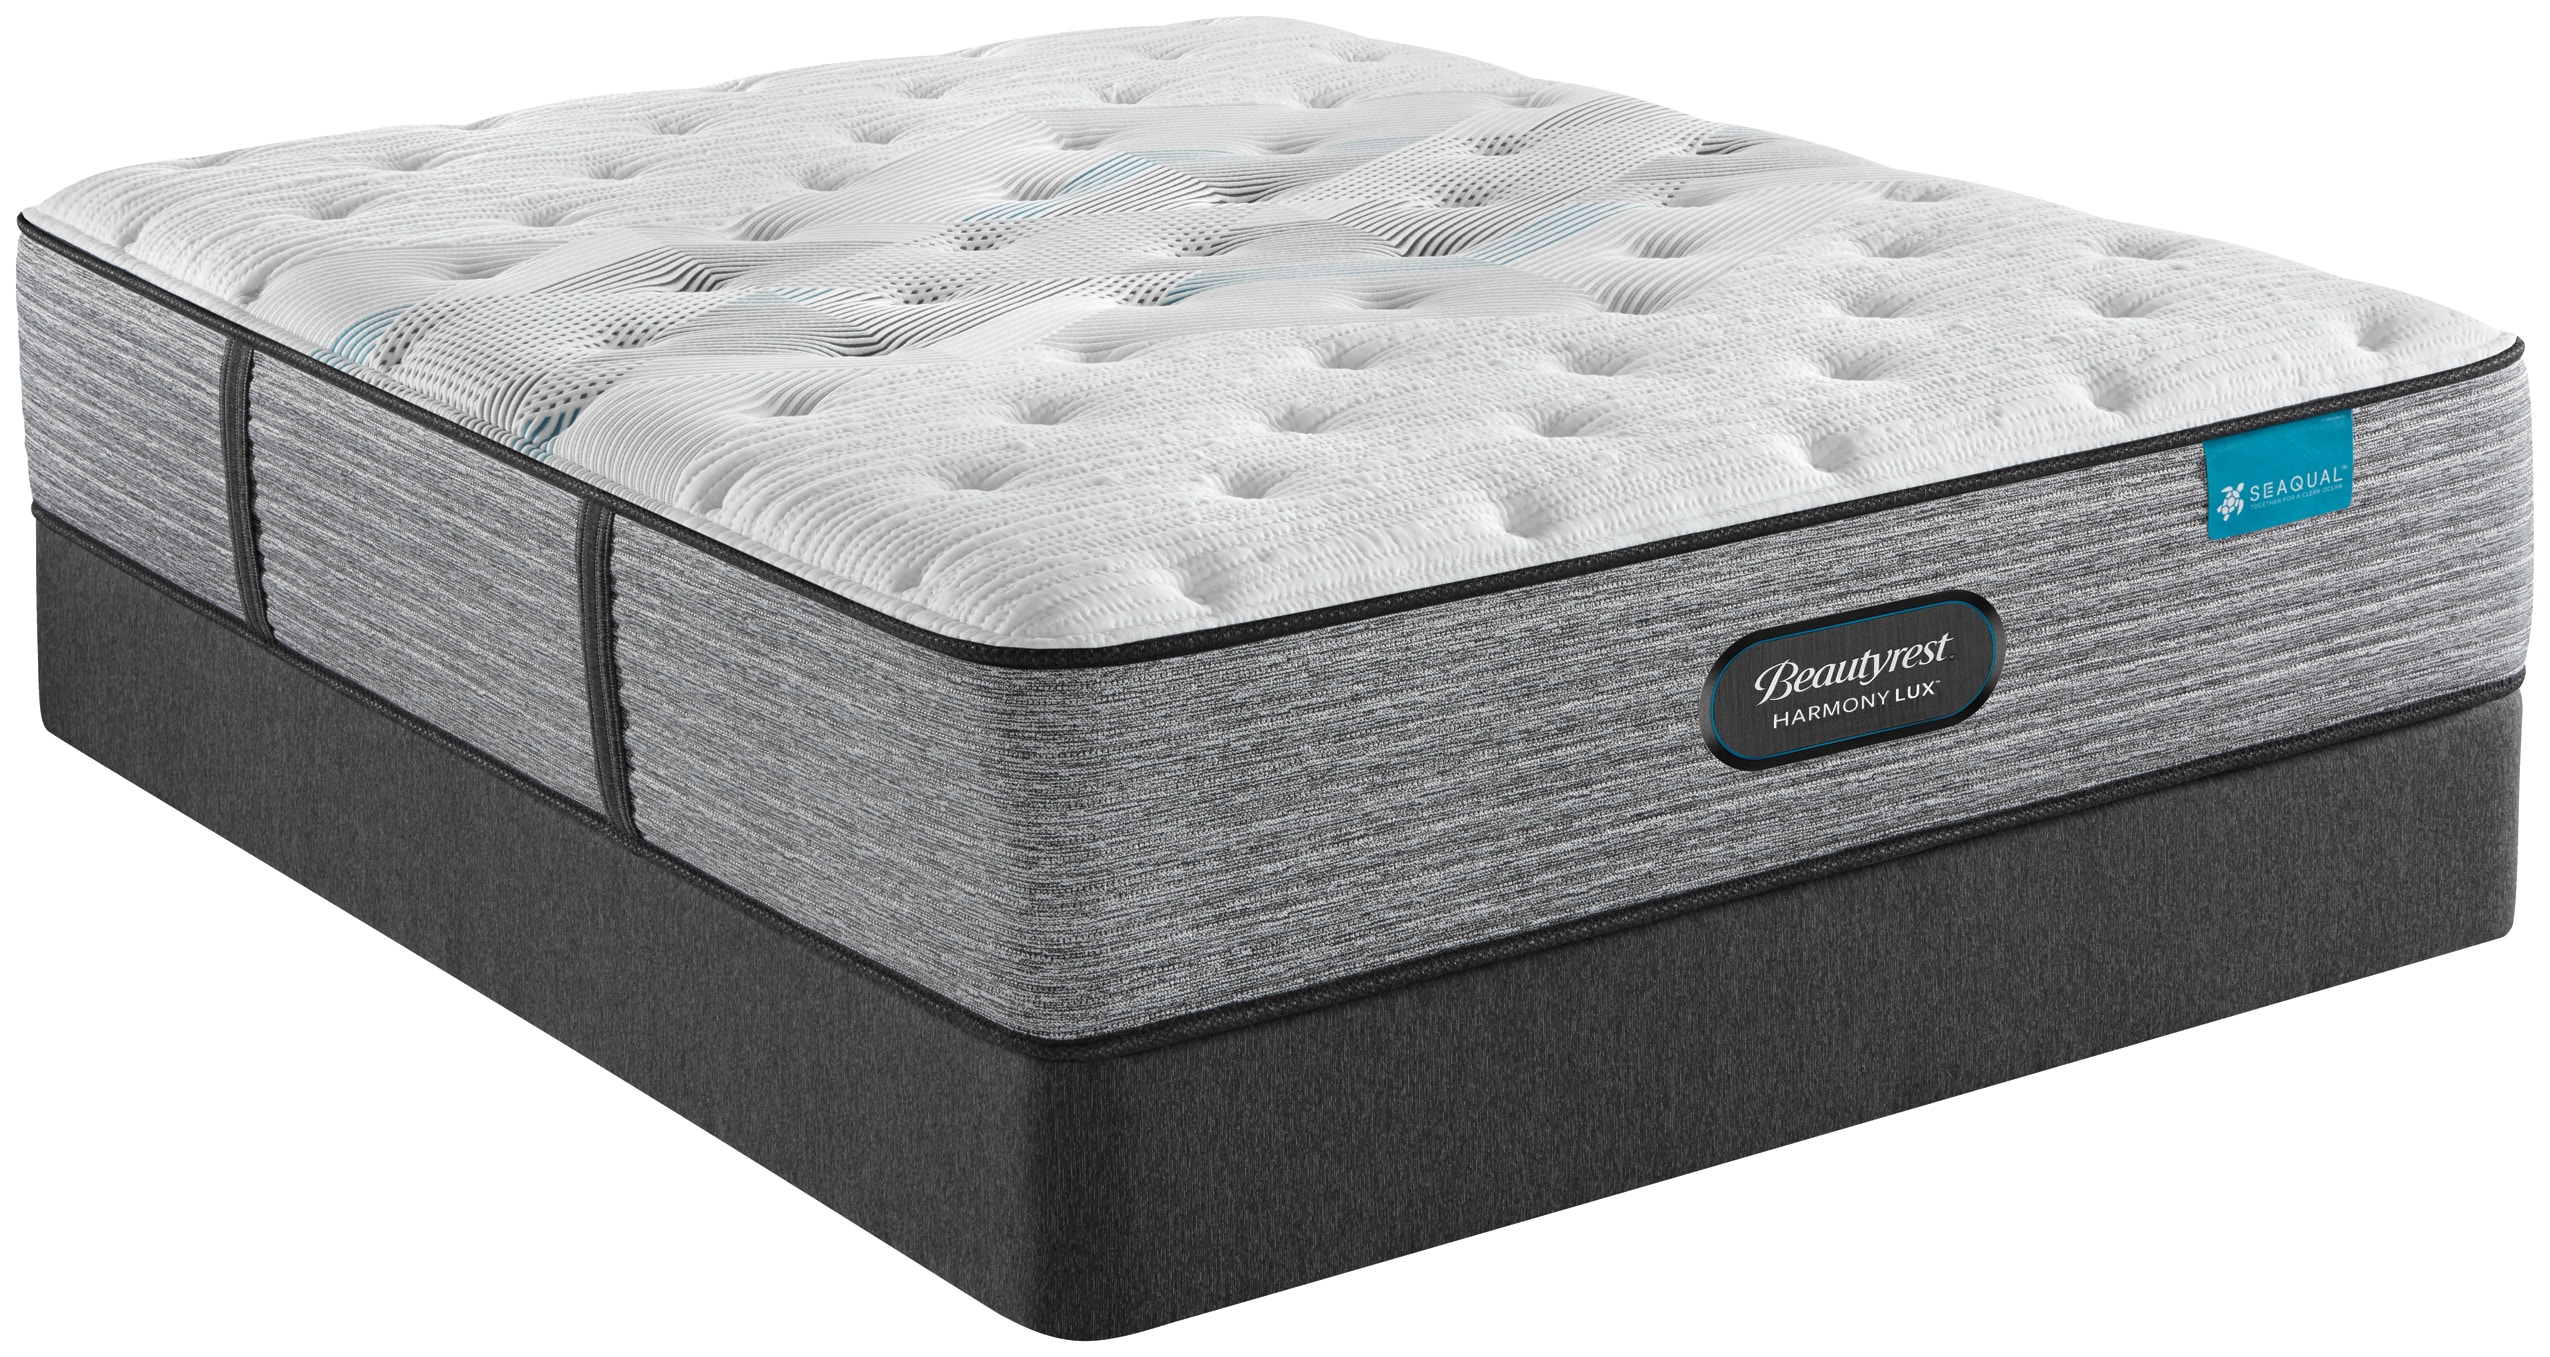 beautyrest plush pillow top mattress